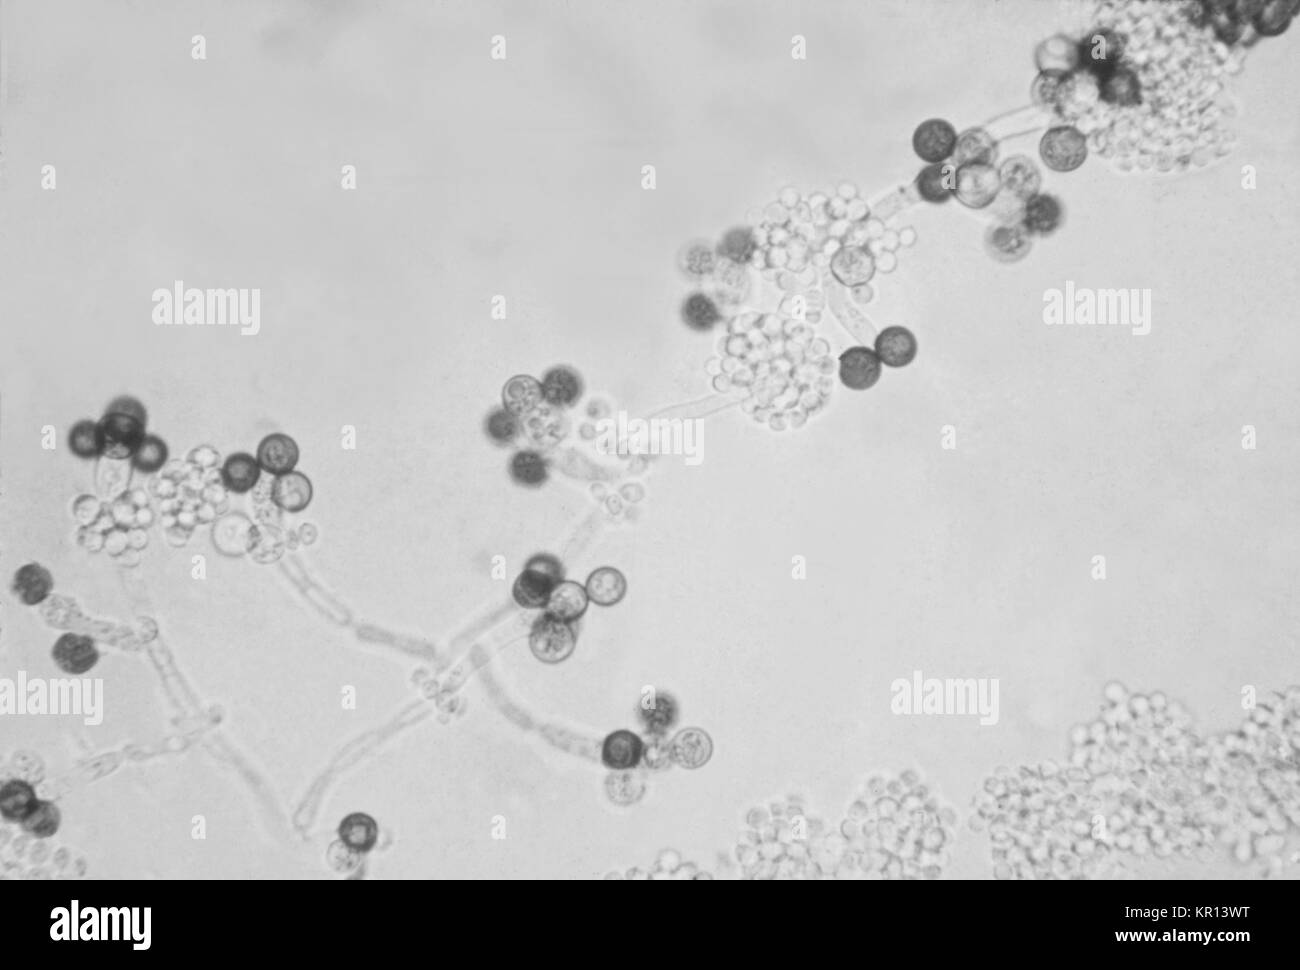 Das ist ein Bild für chlamydospores, die reproduktive, dickwandige Strukturen der Pilz Candida albicans, 1963. Chlamydospores sind eine spezielle Art von Spore, die größer sind als die standard Sporen durch die besonderen Pilz produziert und haben sehr dicke Wände. Chlamydospores sind in der Regel dunkel pigmentiert. Bild mit freundlicher Genehmigung von CDC/Dr. Gordon Roberstad. Stockfoto